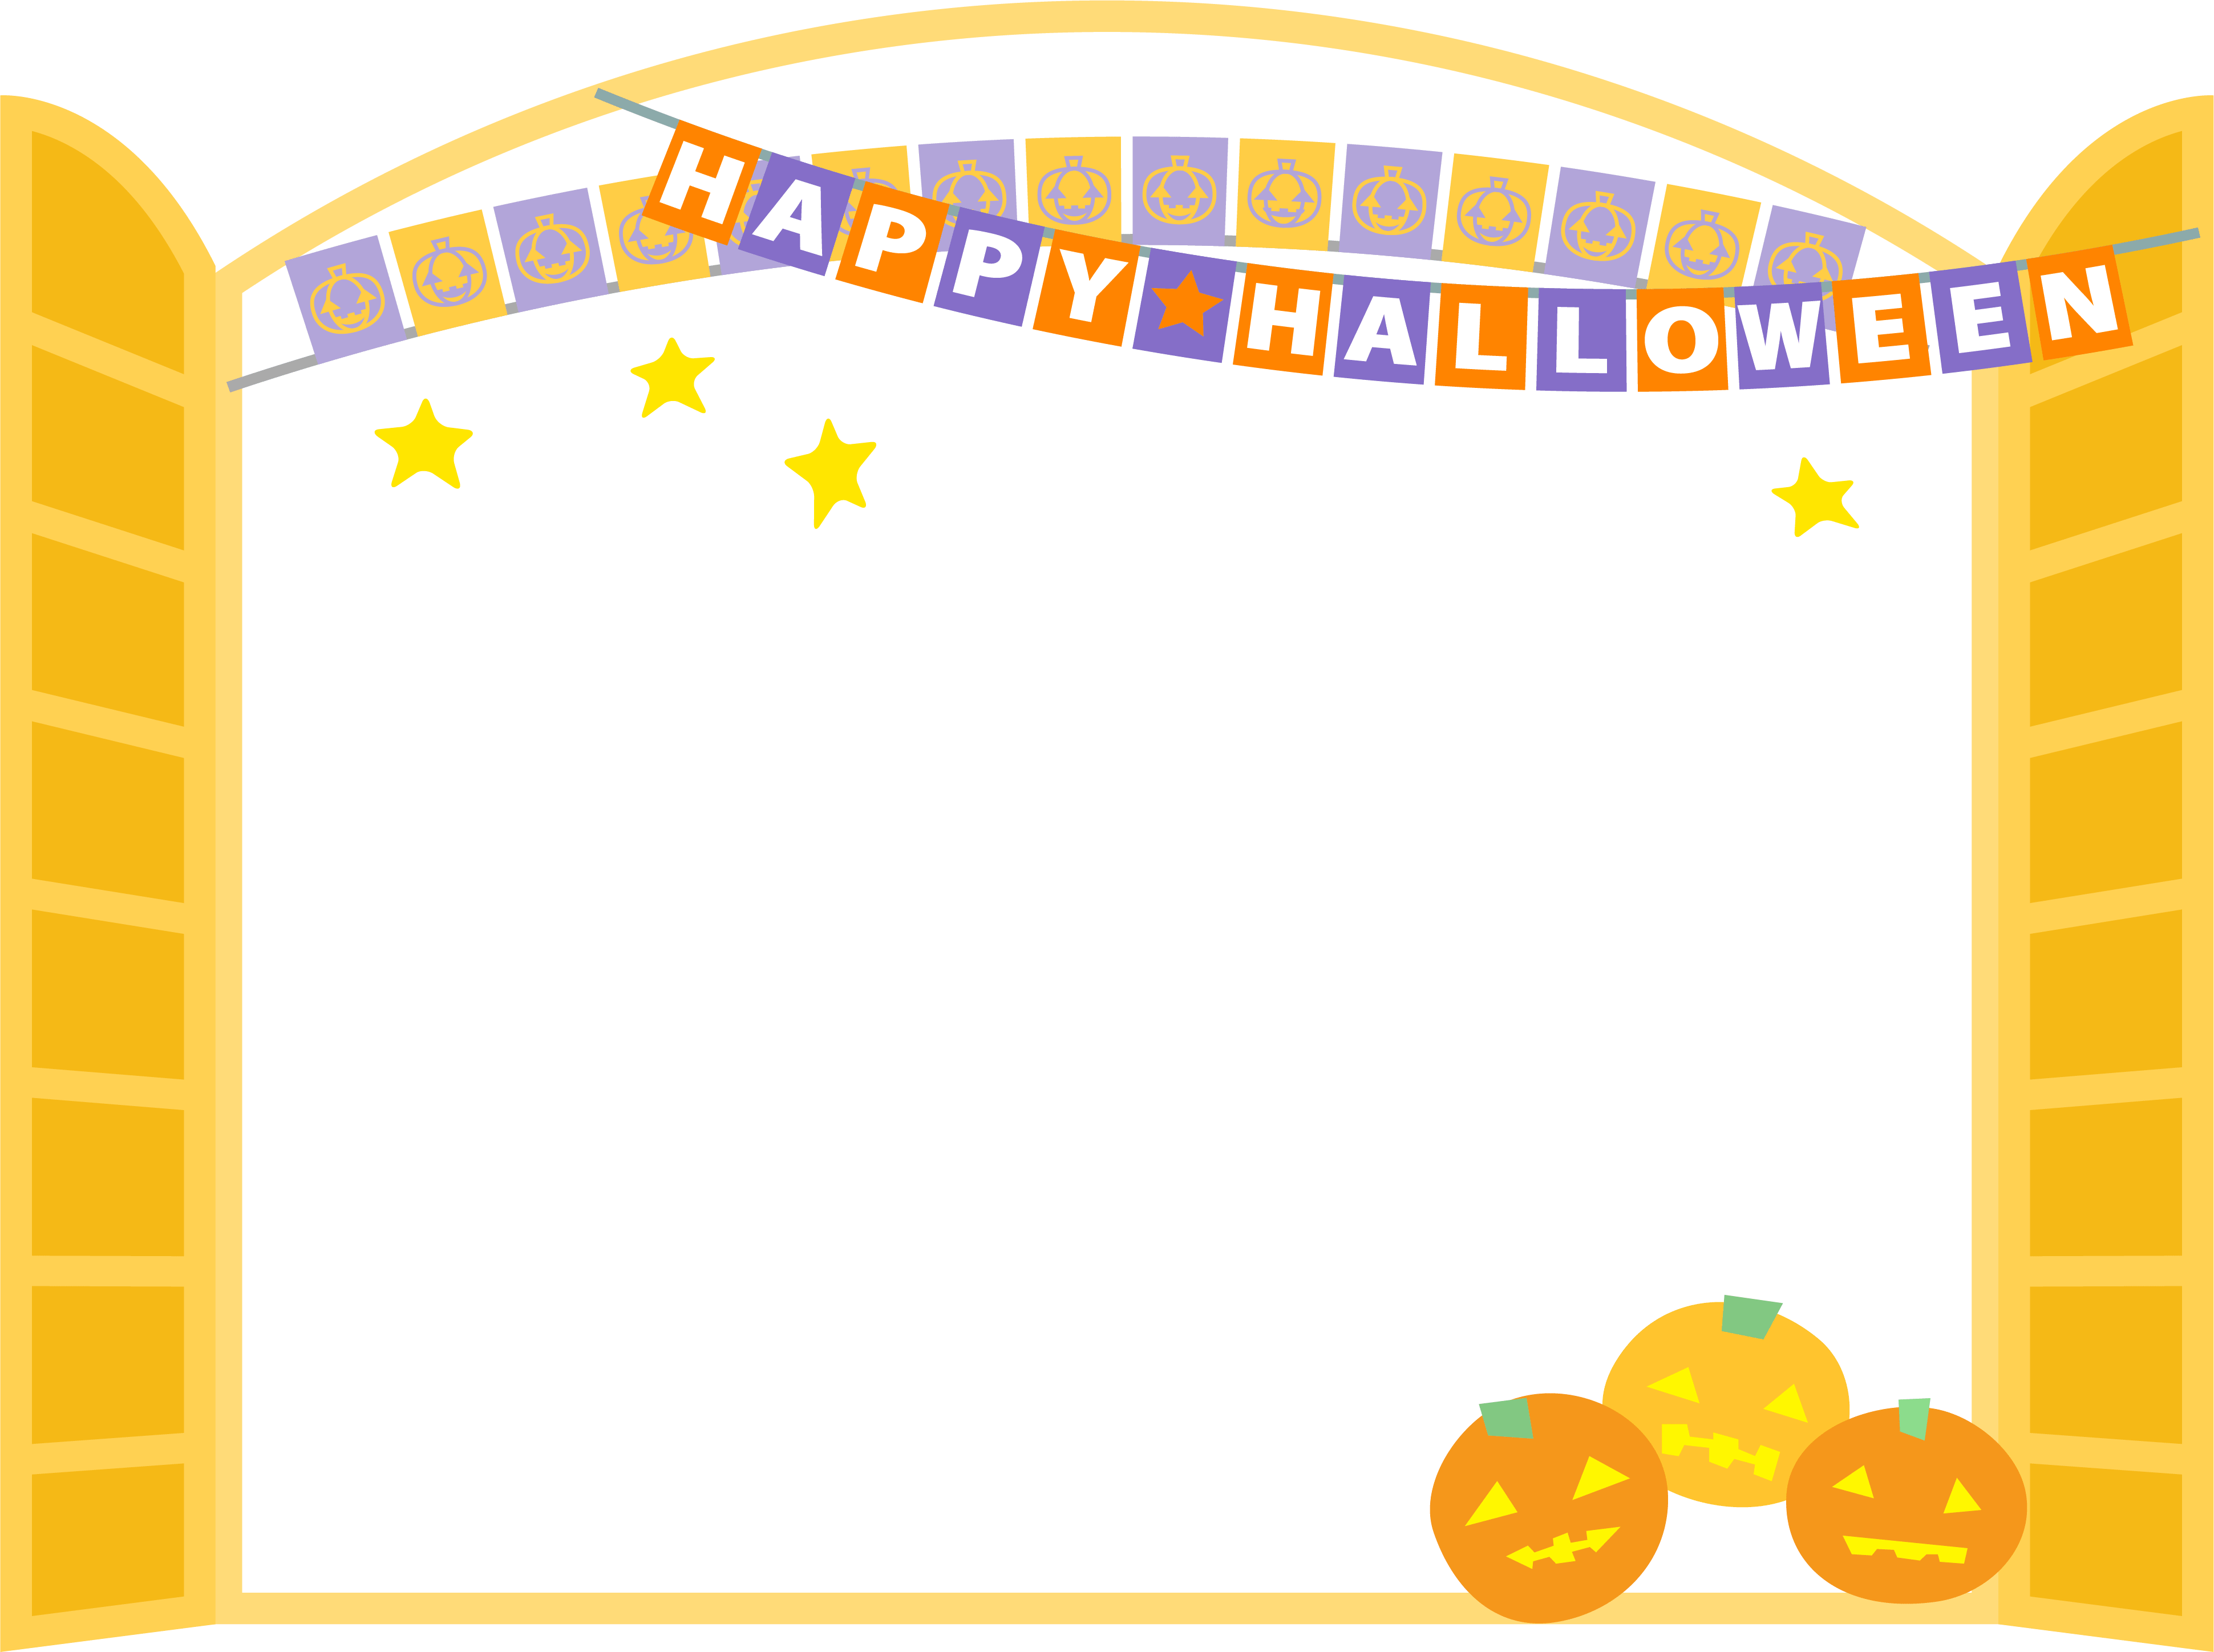 ハロウィン-フラッグガーランドとオレンジ色の窓のフレーム飾り枠